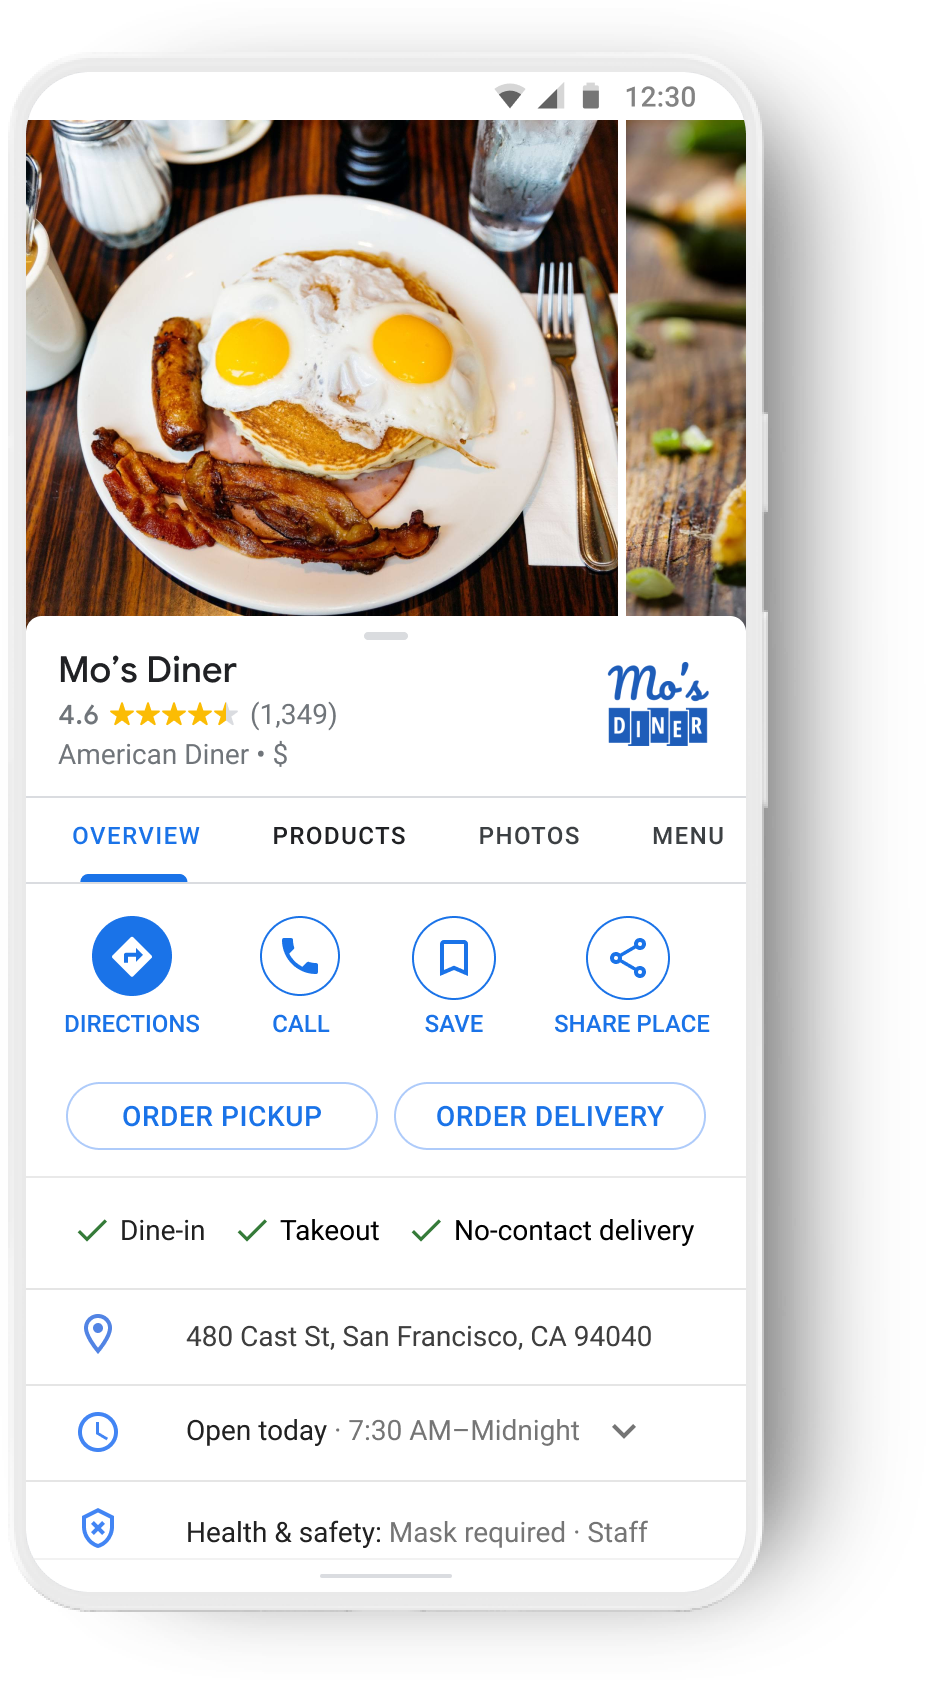 Google マップでエンドツーエンドの注文、1 つのレストランでの注文に対応。